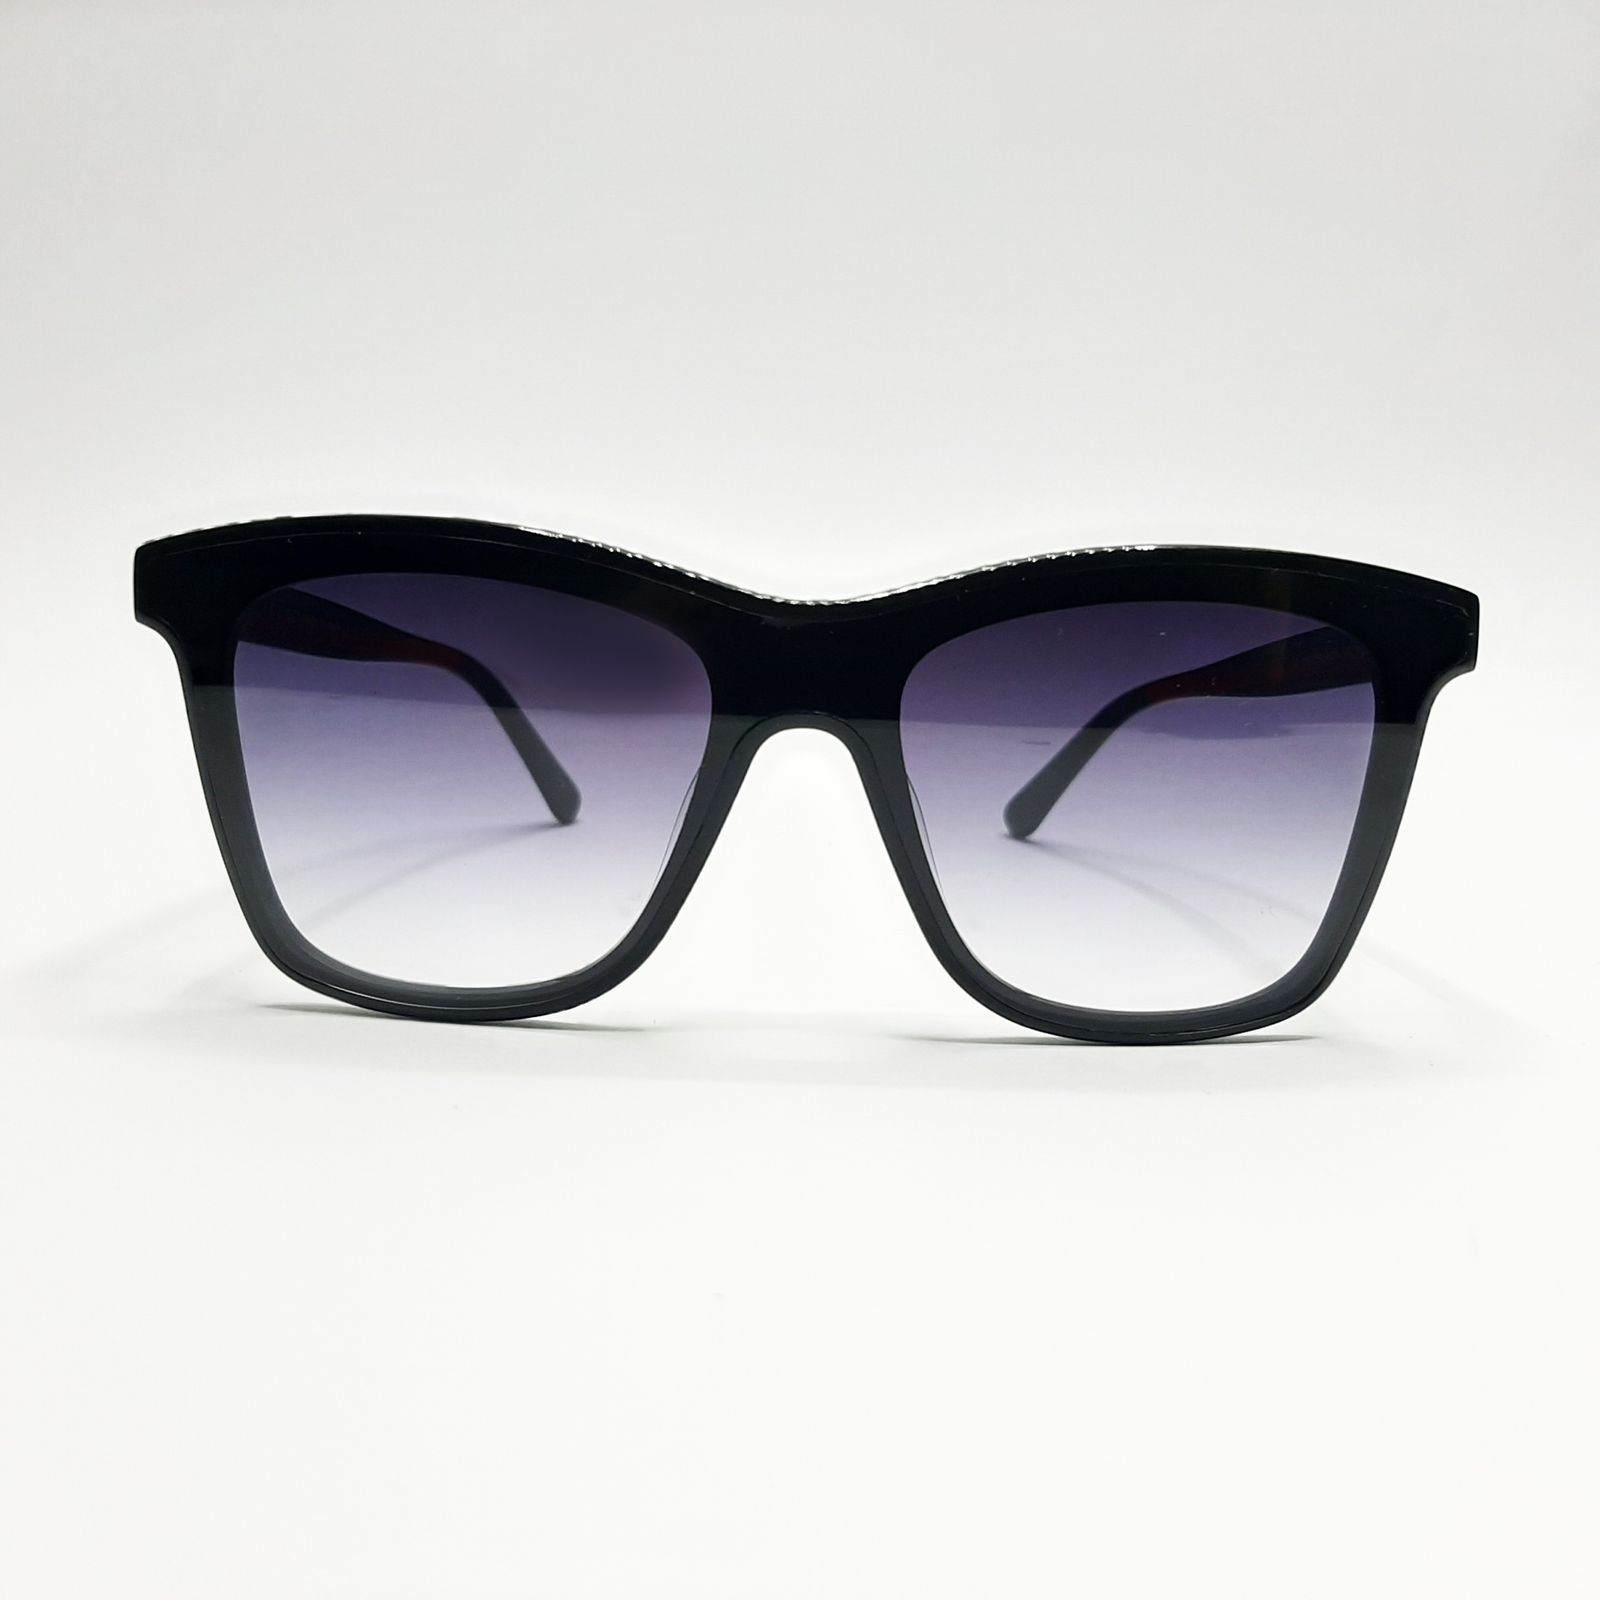 عینک آفتابی مدل GG0166c7 -  - 3